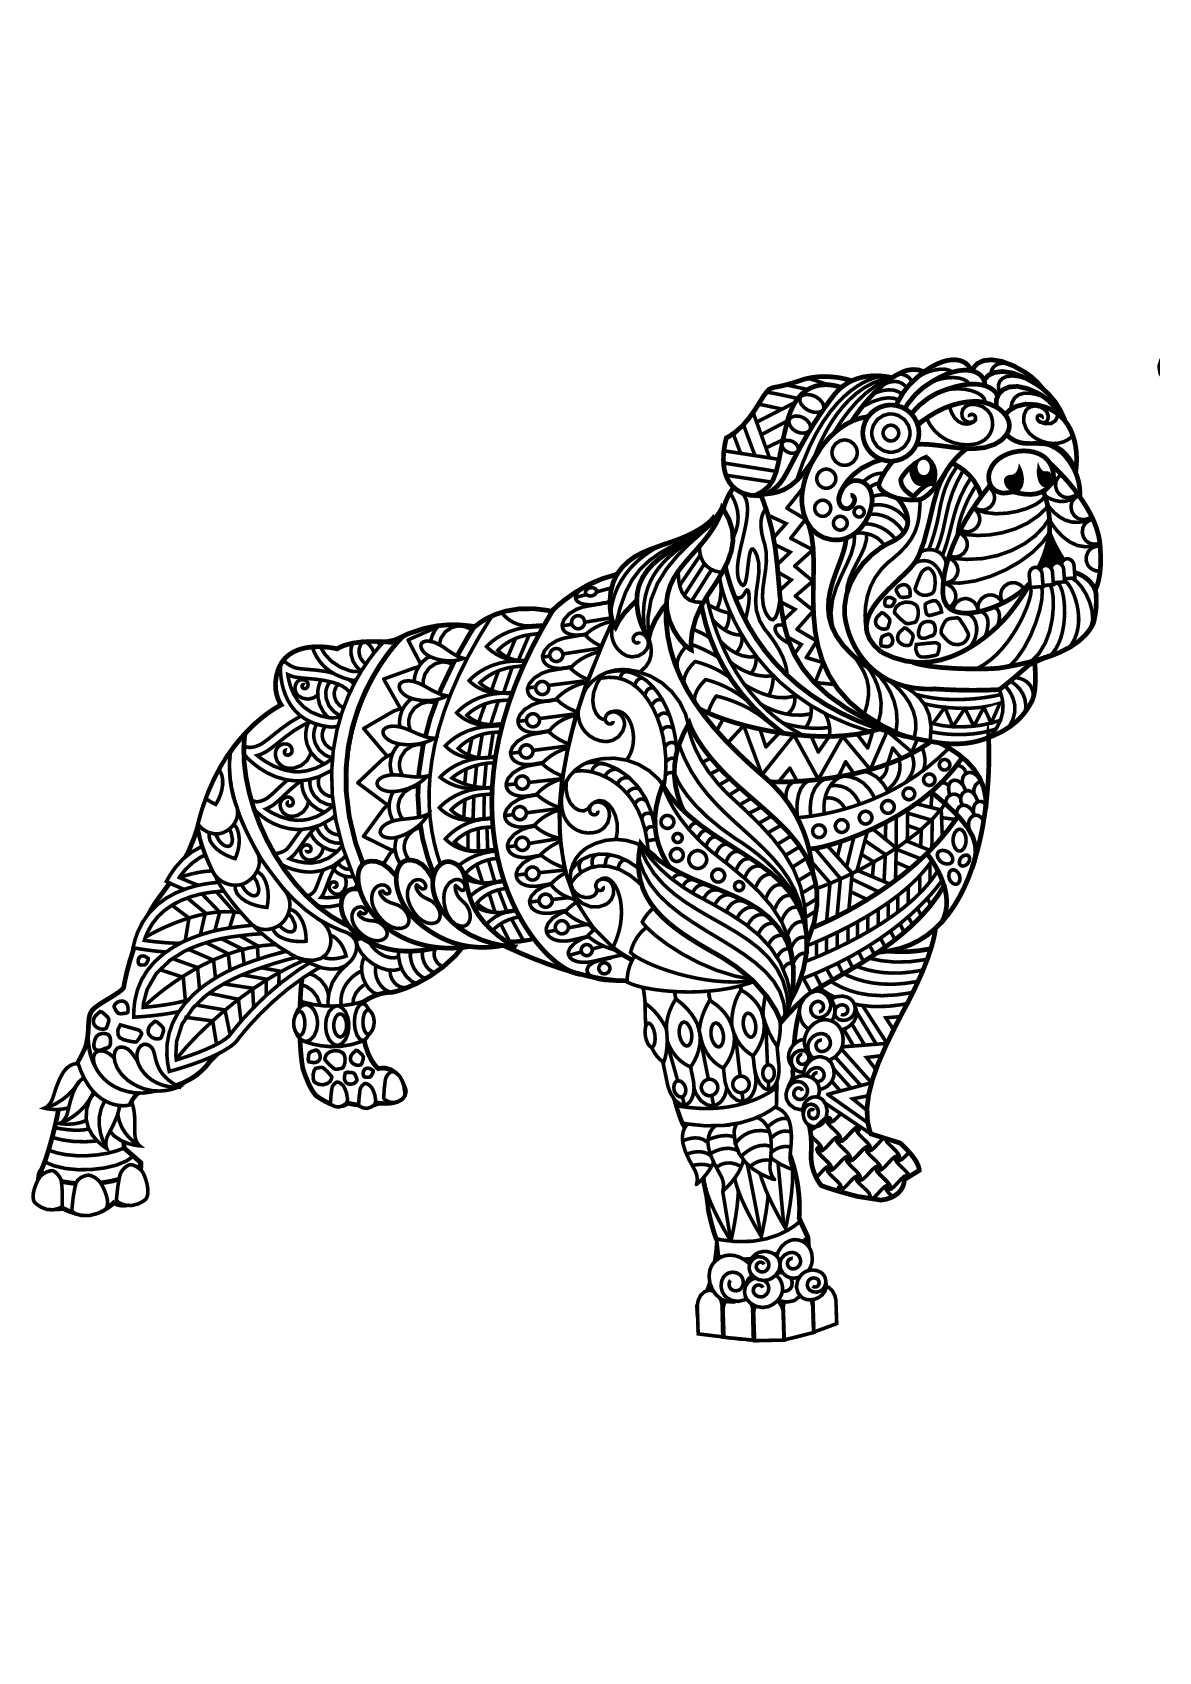 Bulldog, com padrões harmoniosos e complexos